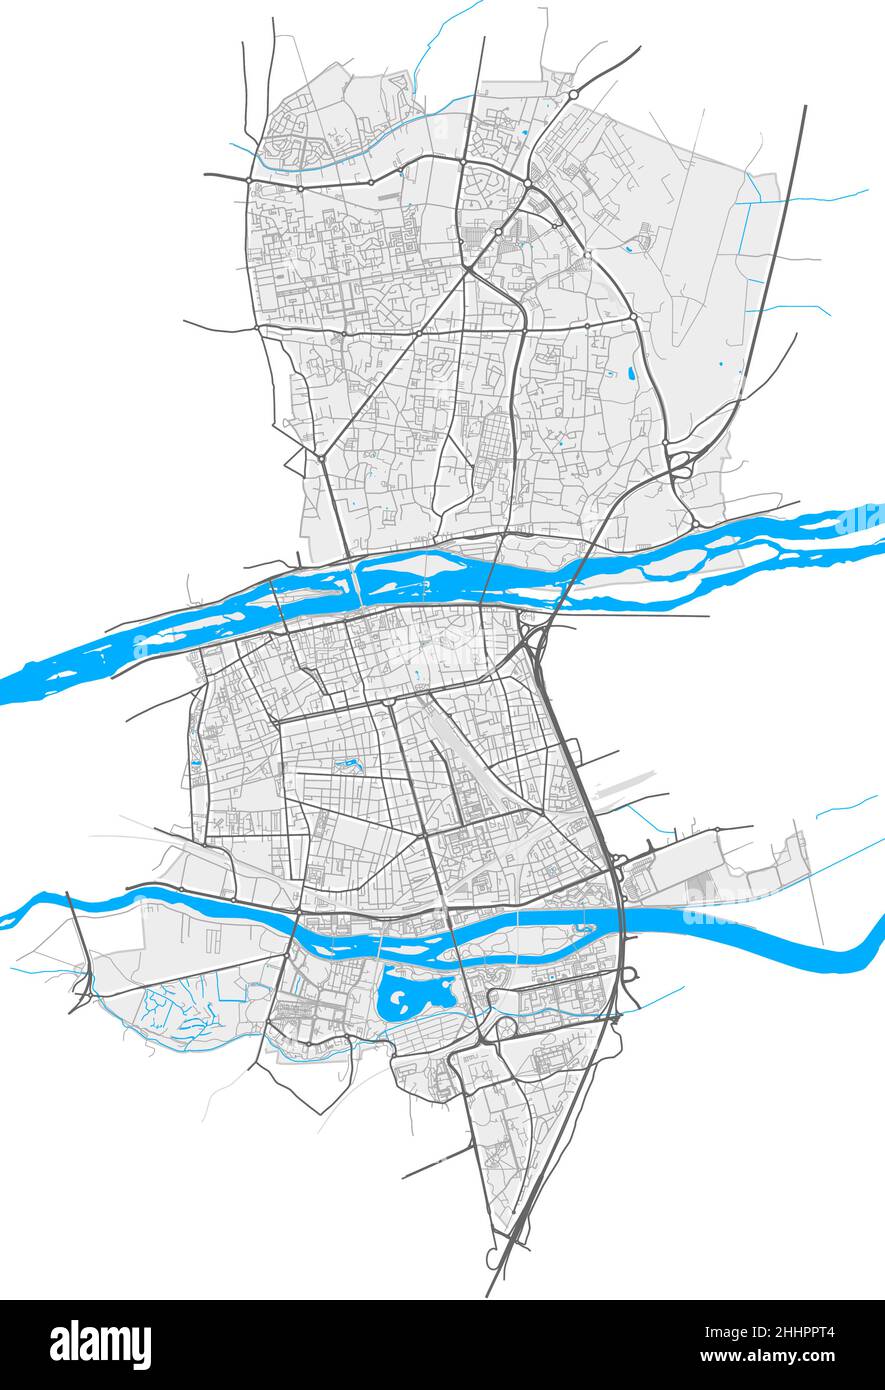 Tours, Indre-et-Loire, Frankreich hochauflösende Vektorkarte mit Stadtgrenzen und bearbeitbaren Pfaden. Weiße Umrisse für Hauptstraßen. Viele detaillierte Pfade. Stock Vektor